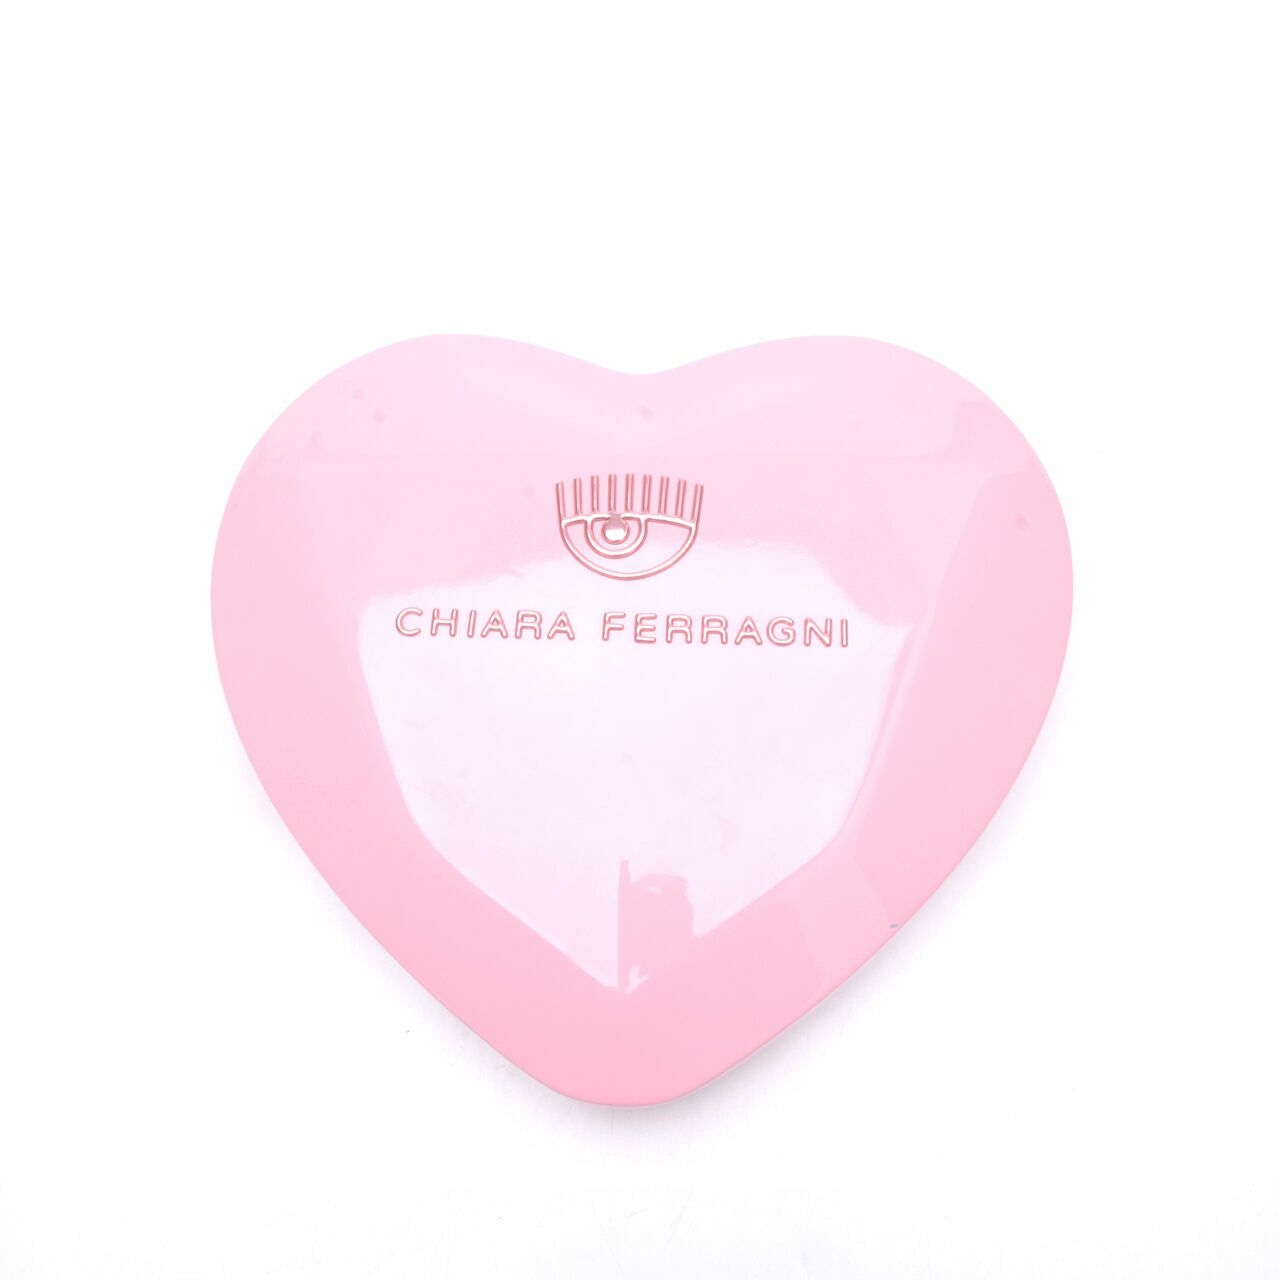 Chiara Ferragni Infinity Love Neckalce Earrings Bracelet Set